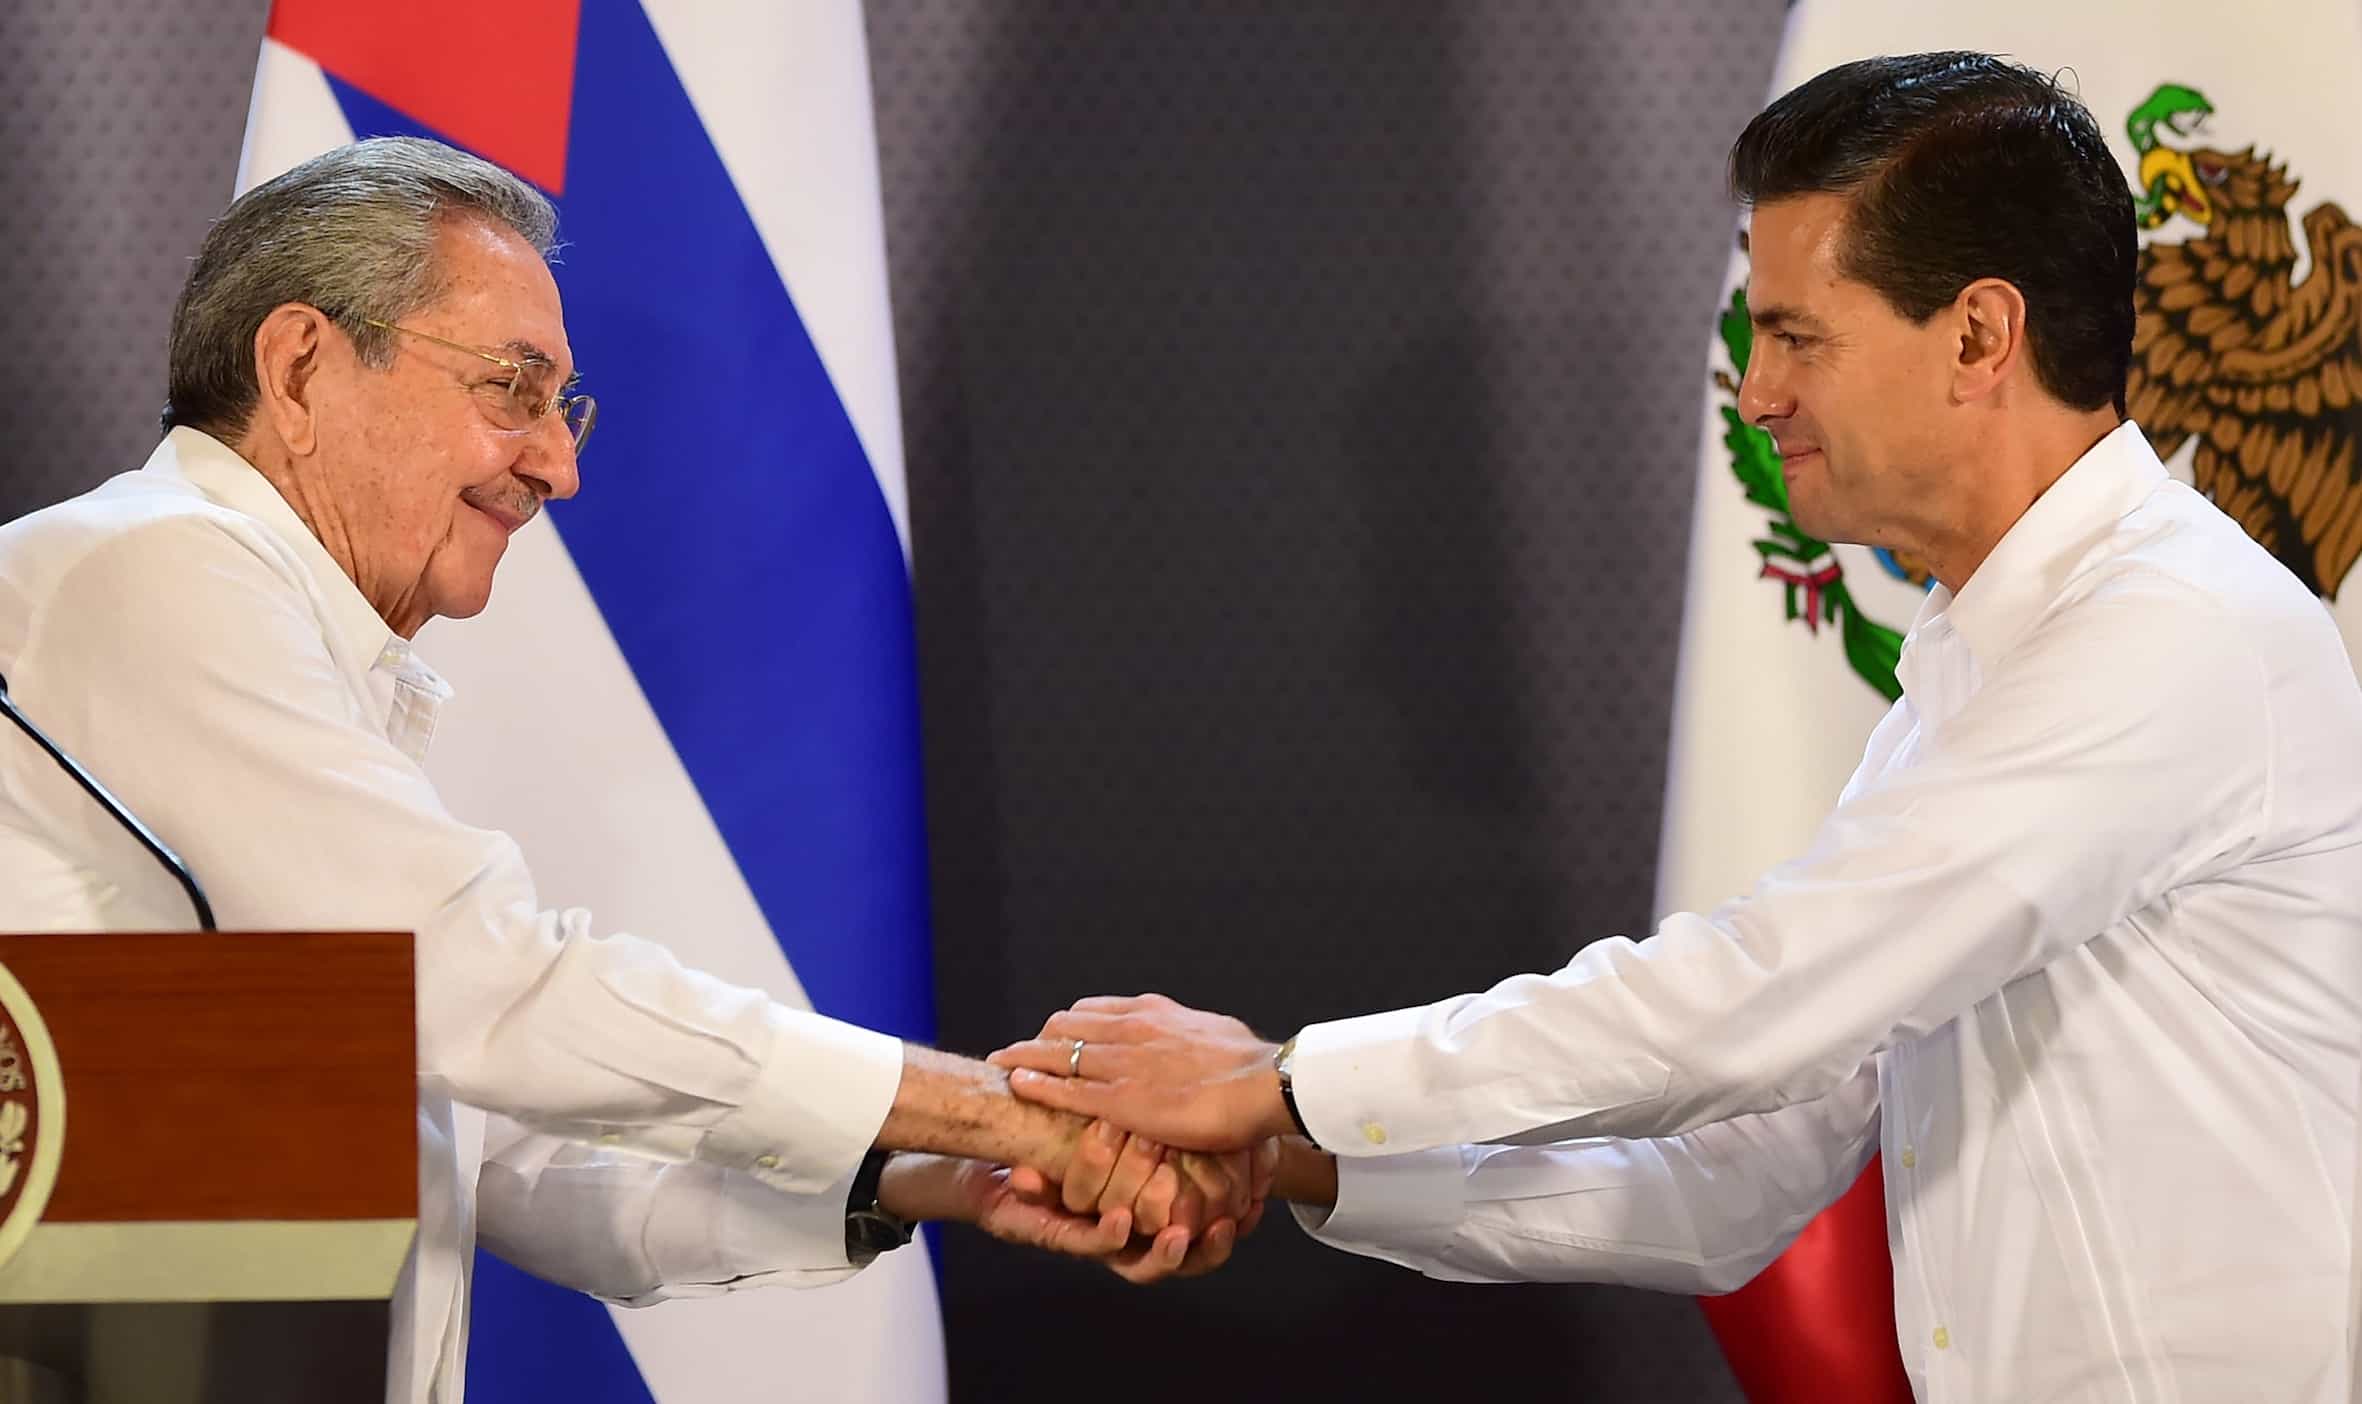 Cuba-Mexico ties: Raul Castro and Enrique Peña Nieto